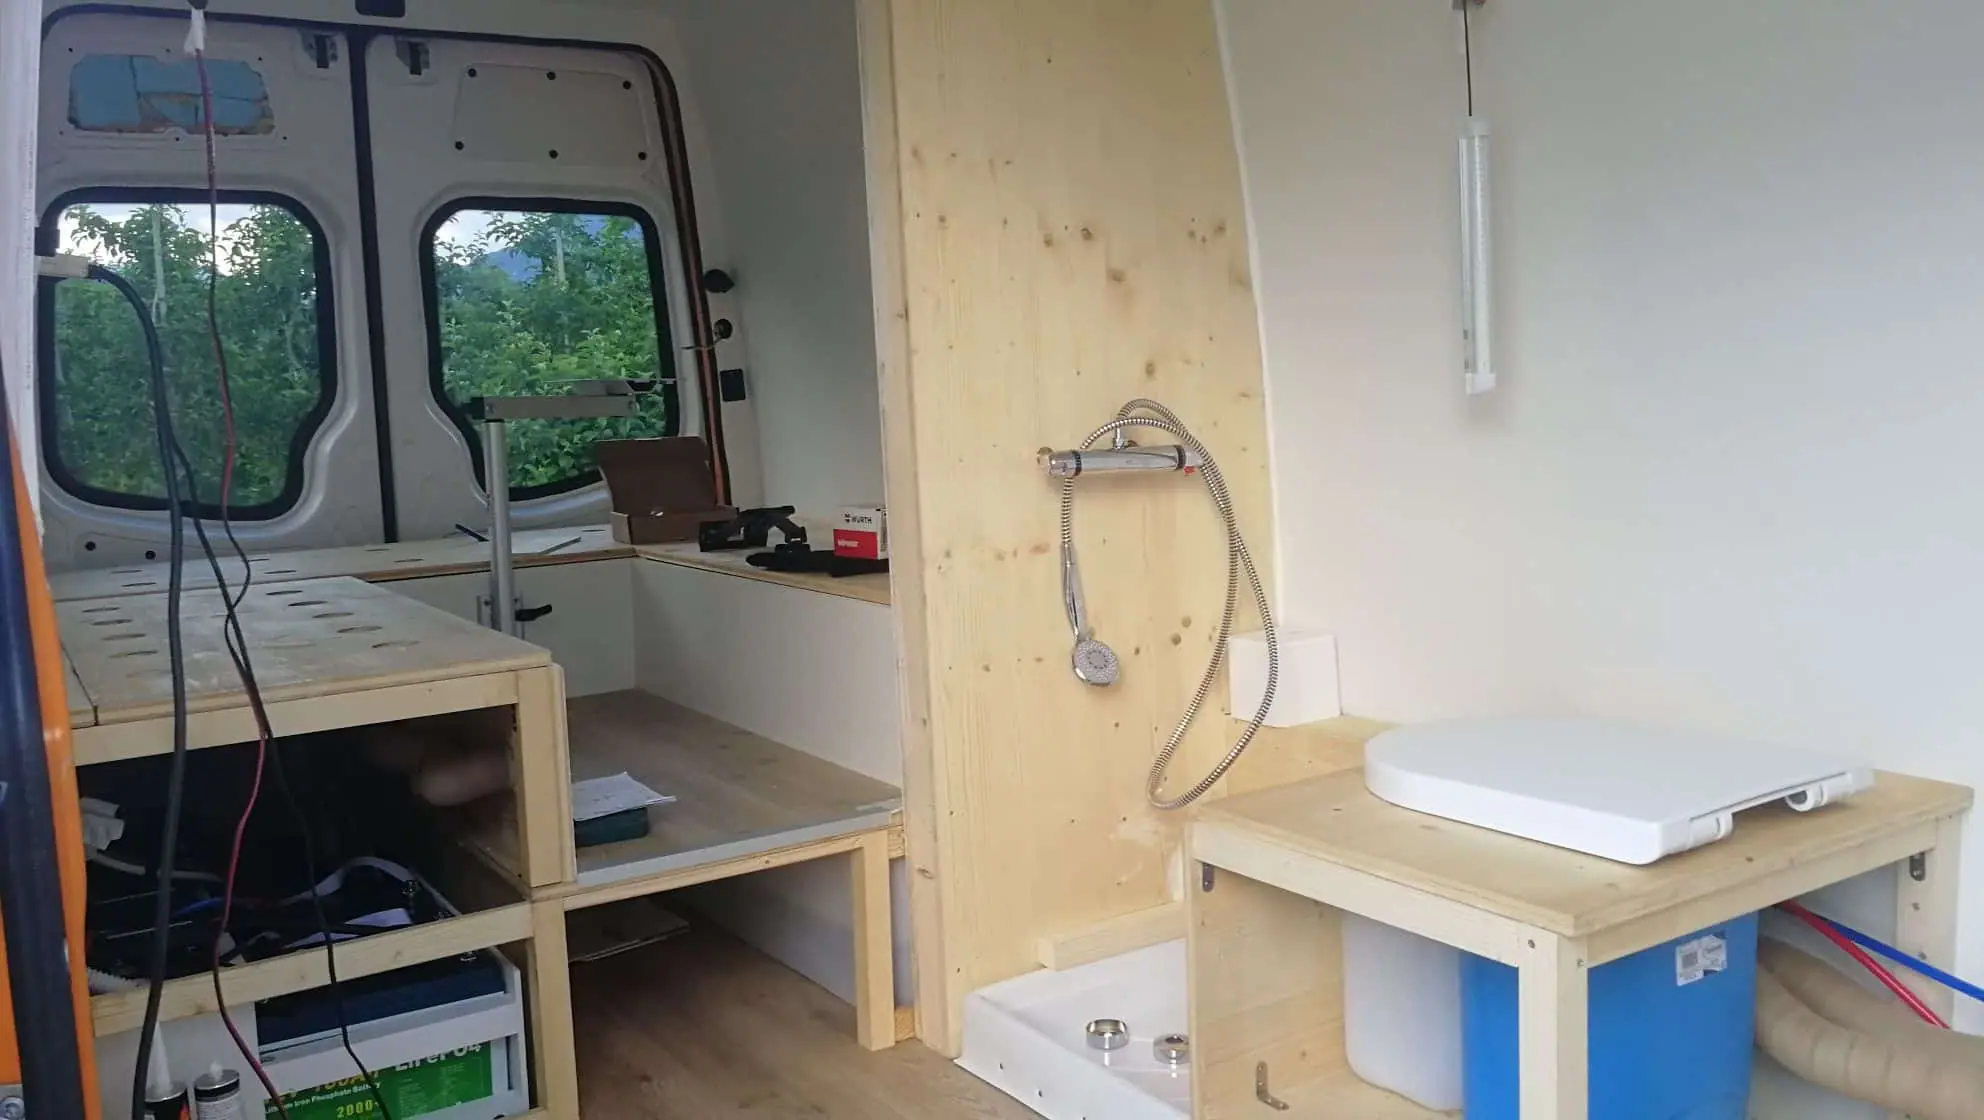 camperize a van - shower prototype DIY